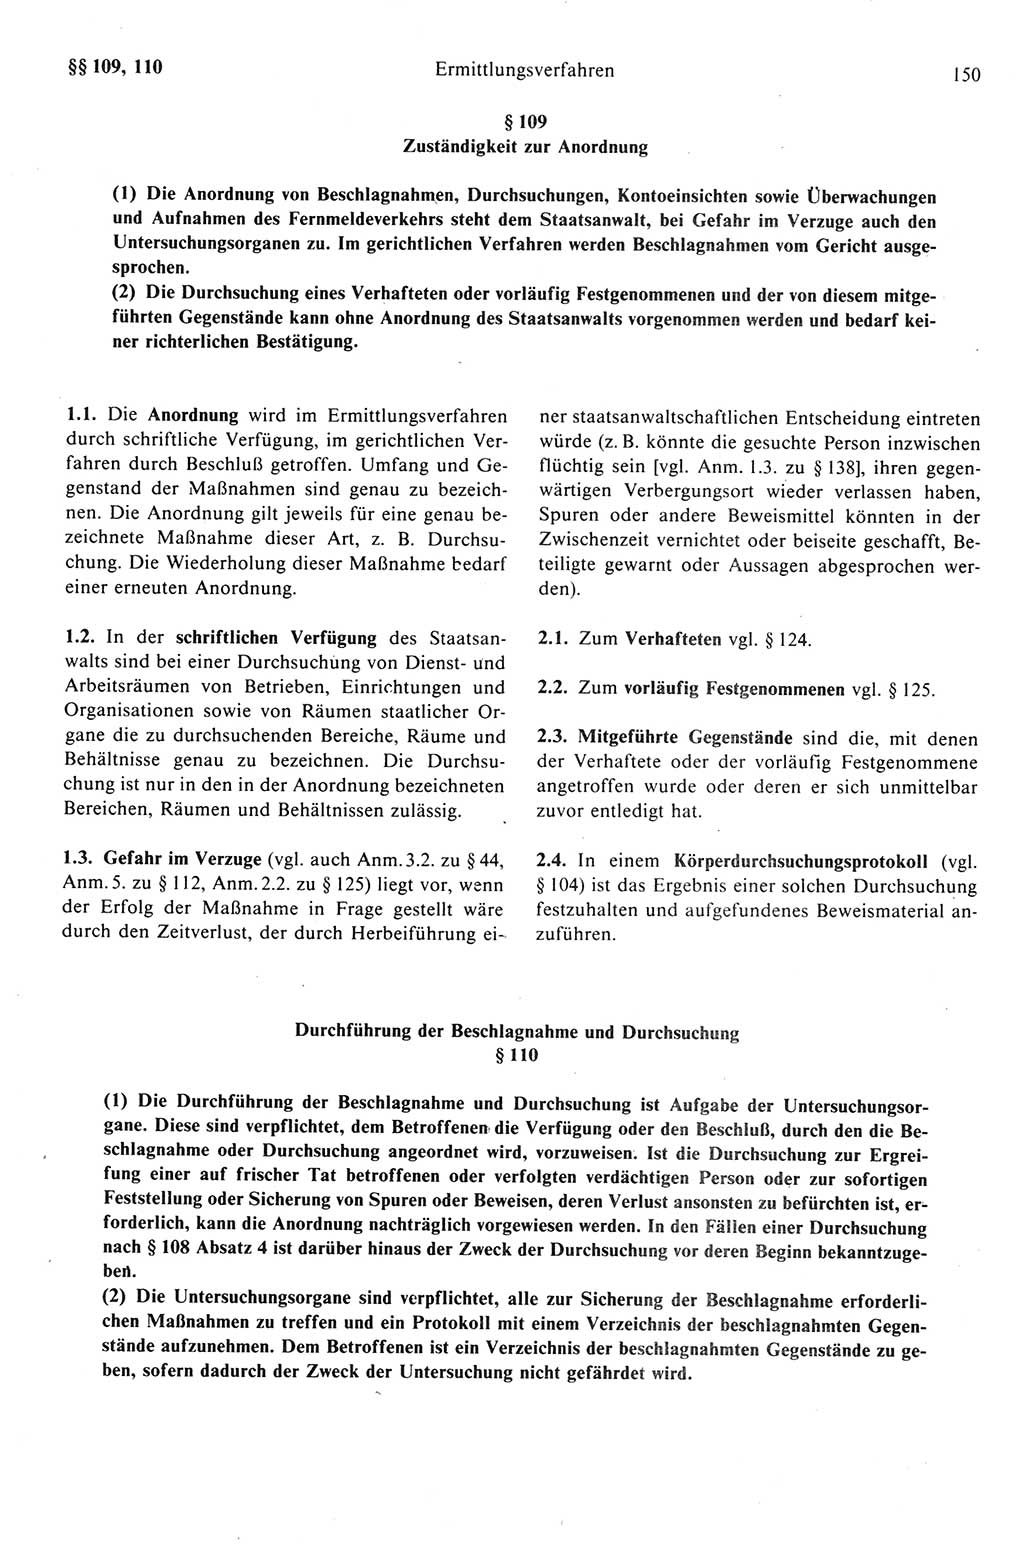 Strafprozeßrecht der DDR (Deutsche Demokratische Republik), Kommentar zur Strafprozeßordnung (StPO) 1989, Seite 150 (Strafprozeßr. DDR Komm. StPO 1989, S. 150)